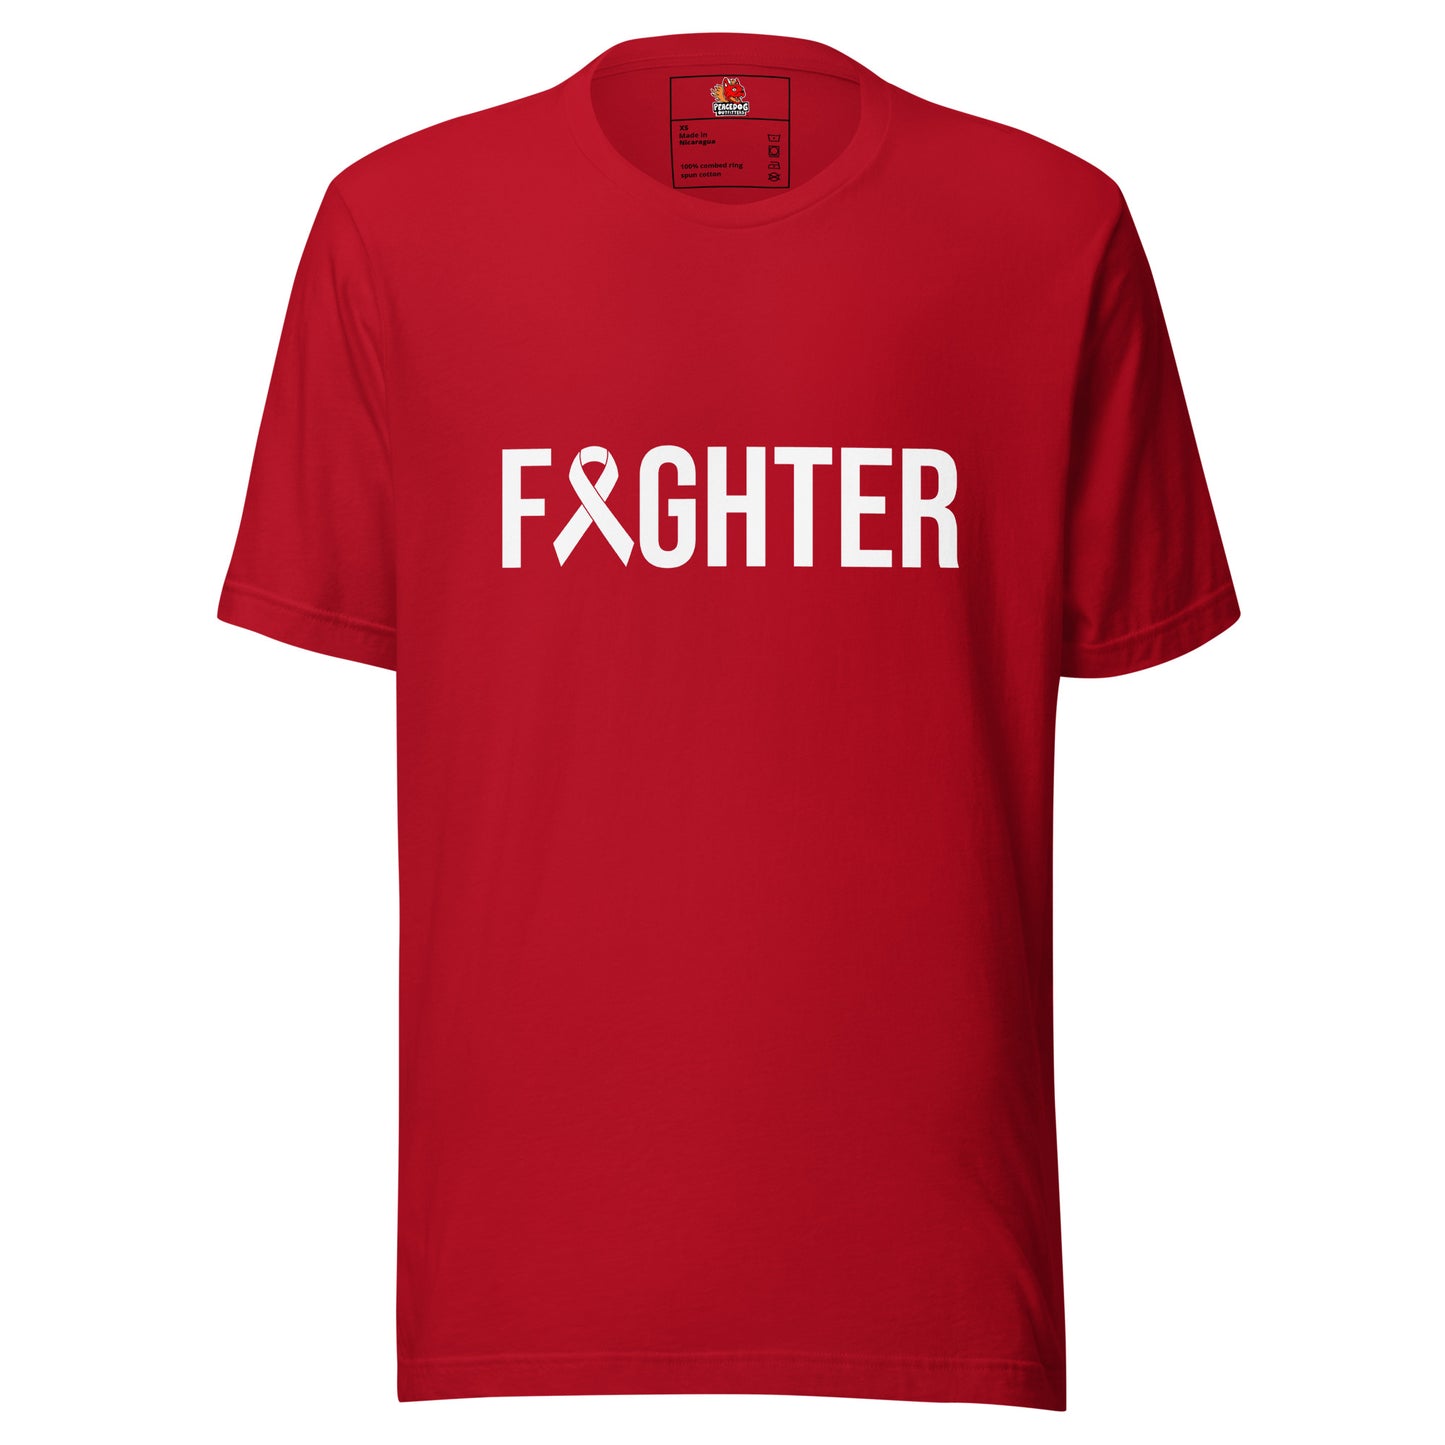 Fighter T-shirt